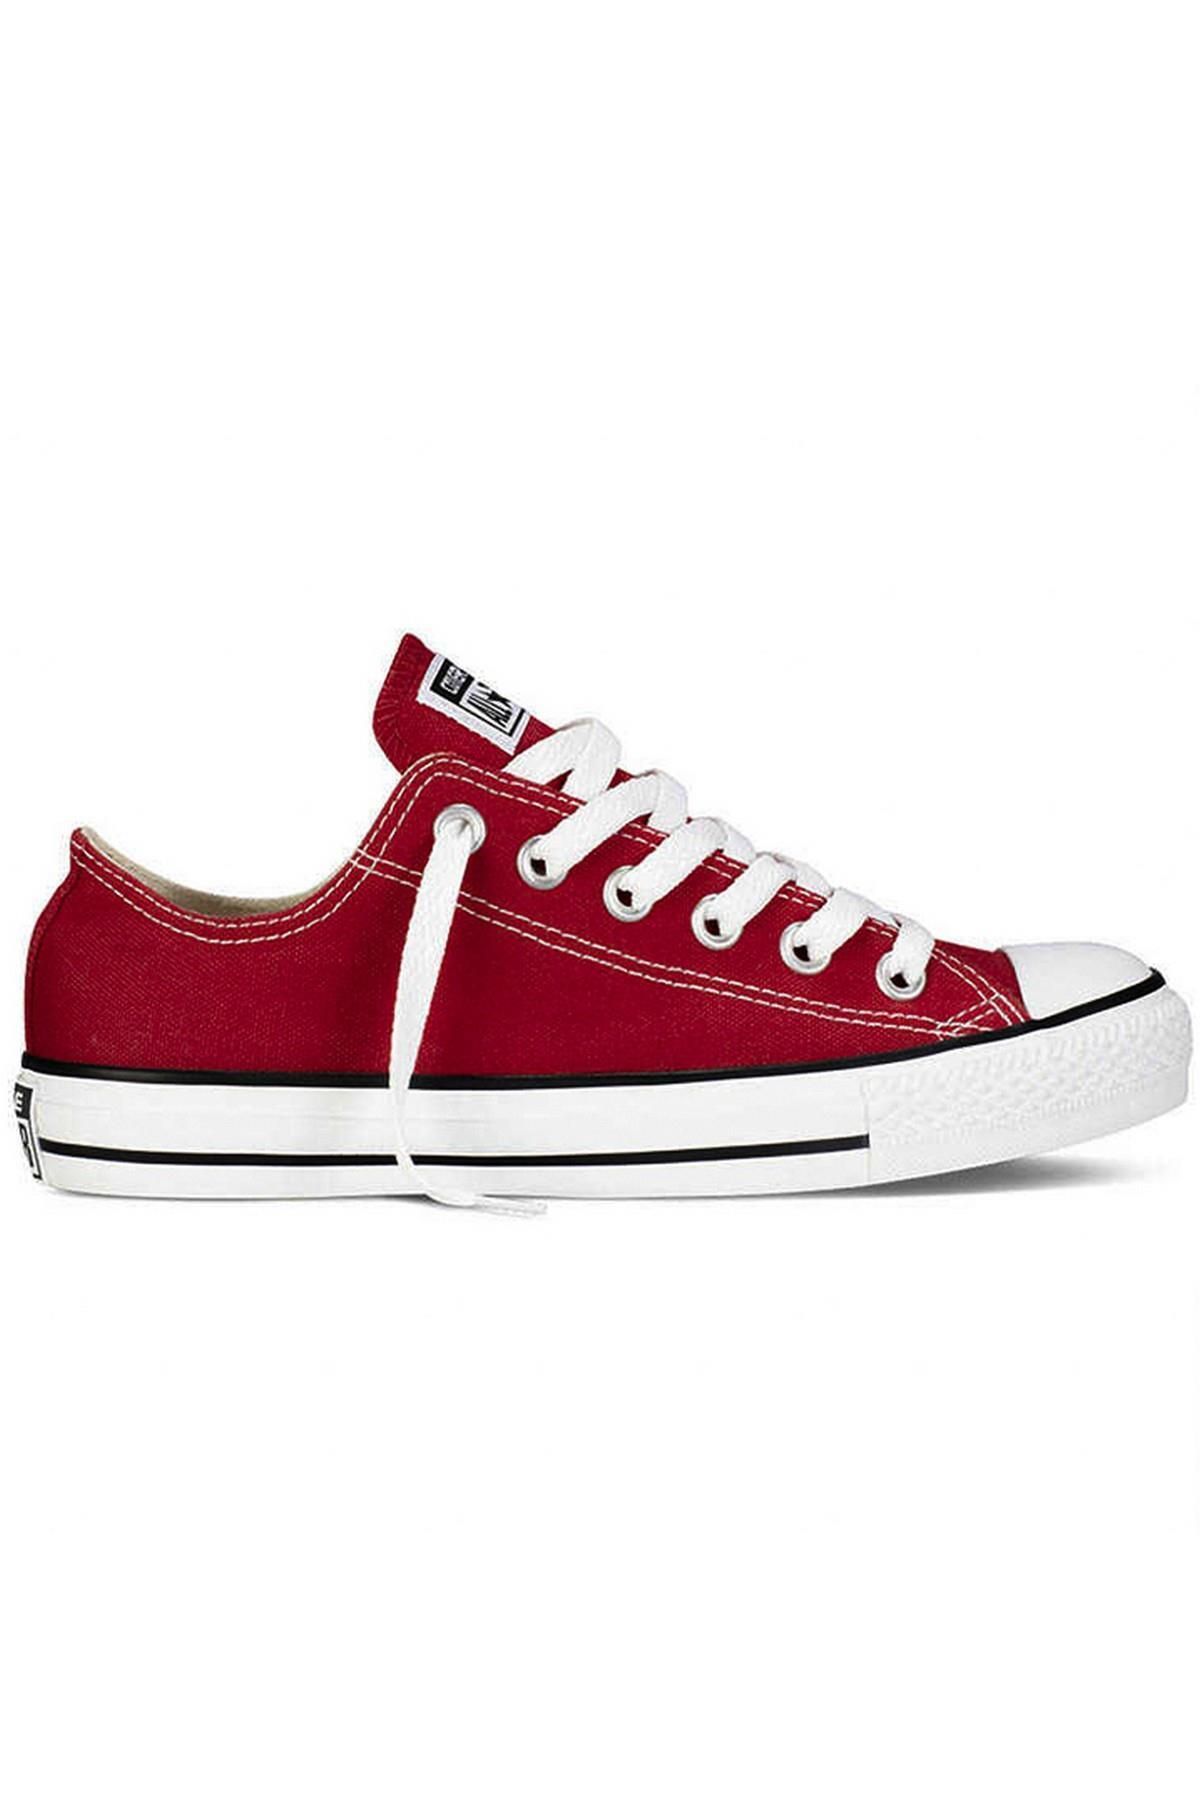 Converse M9691c - Chuck Taylor All Star Unisex Sneaker Ayakkabı